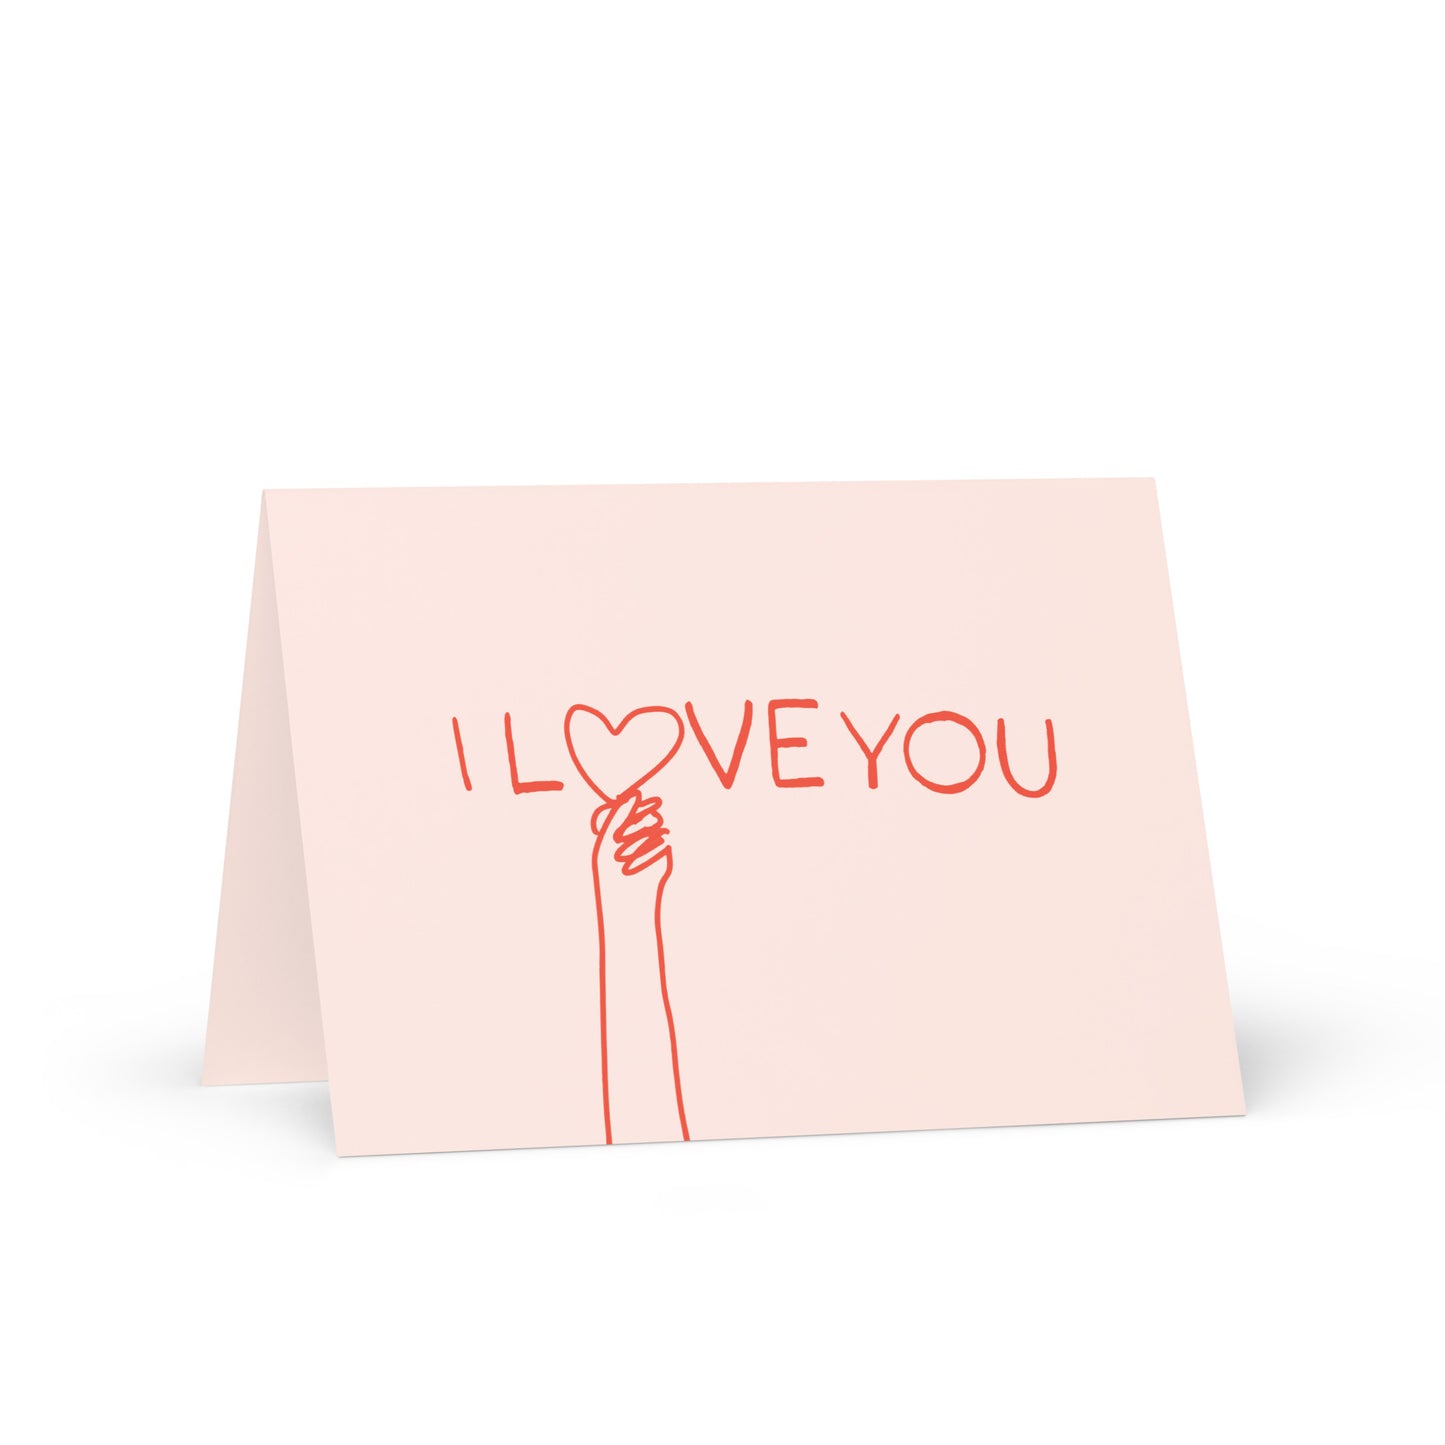 I Love You Card (BLANK)